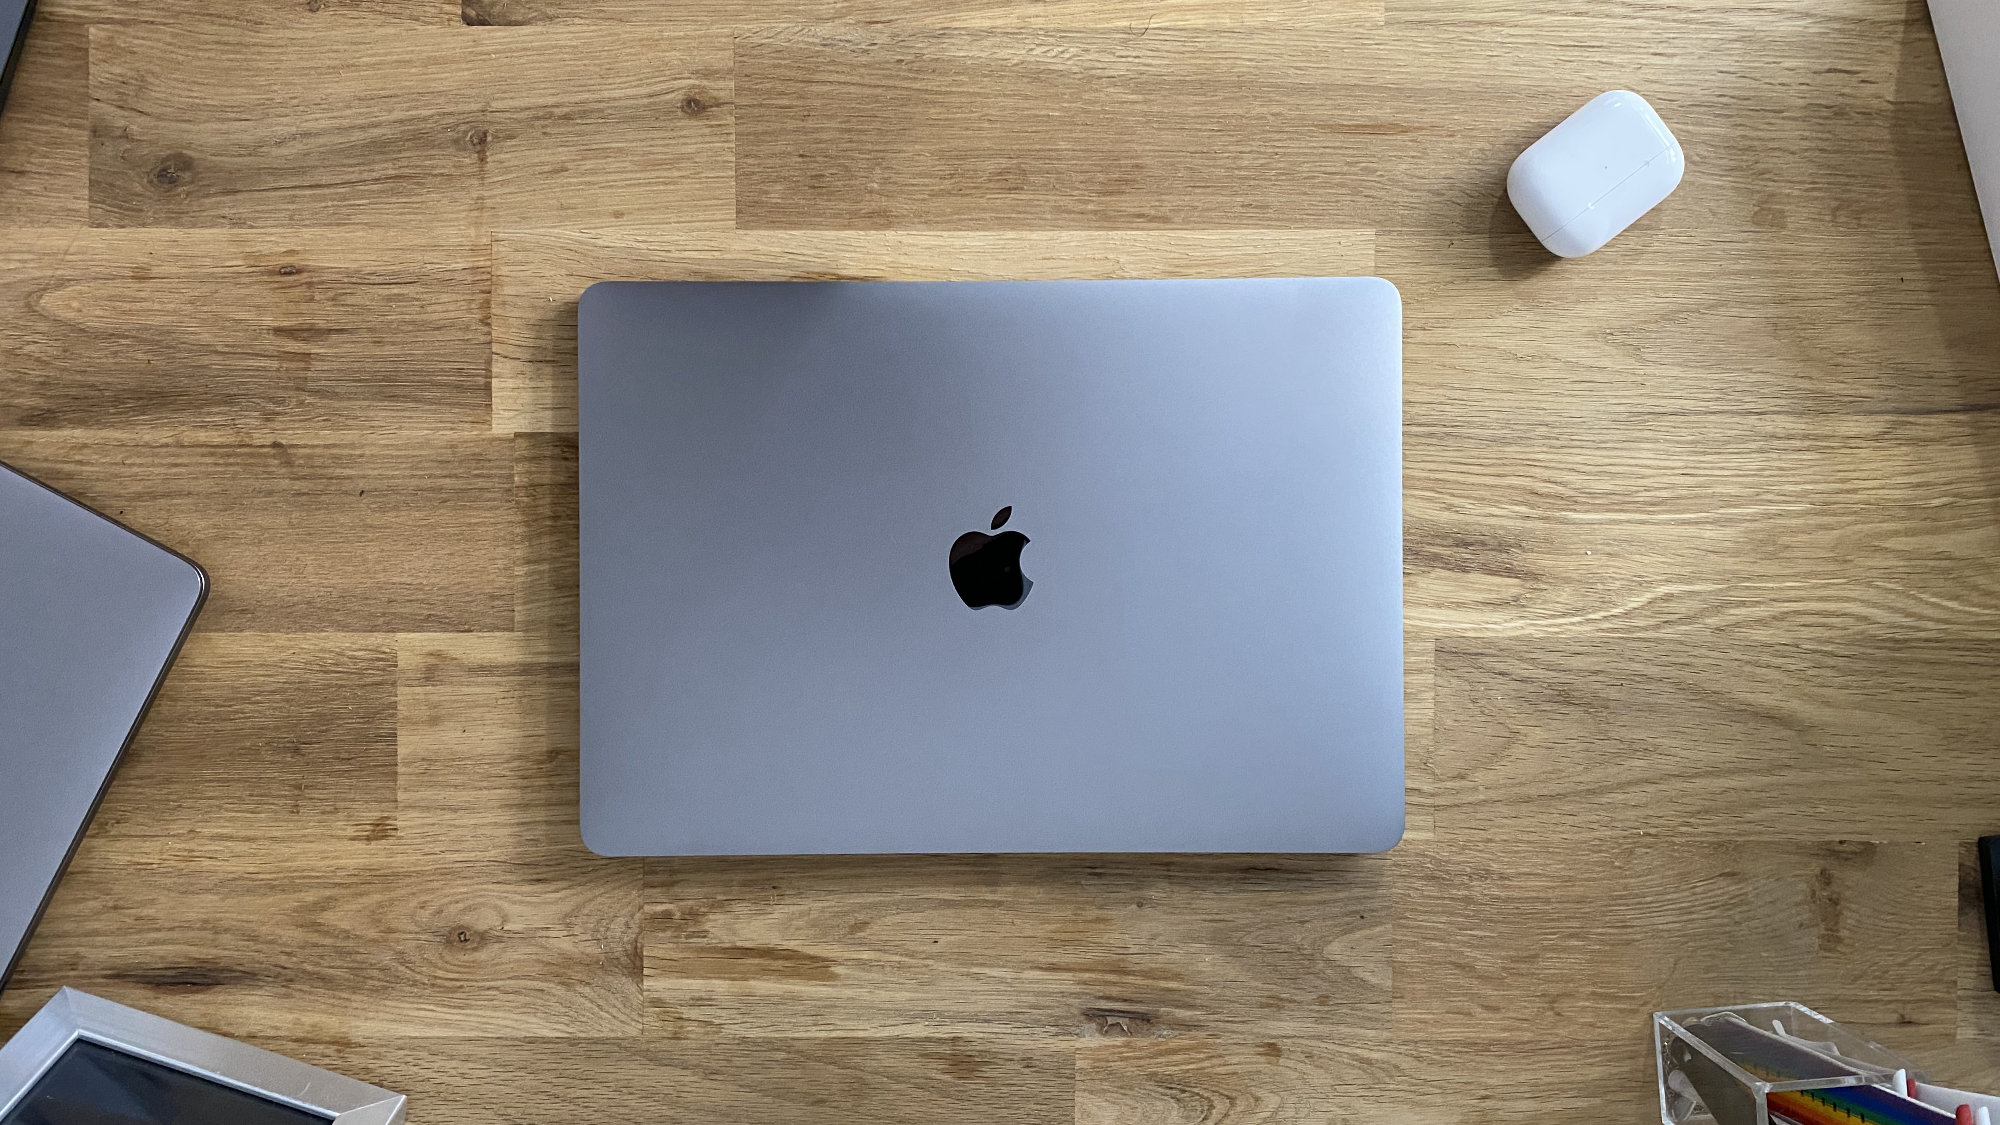 Bon plan : un MacBook Air M1 (2020) à moins de 900 euros !